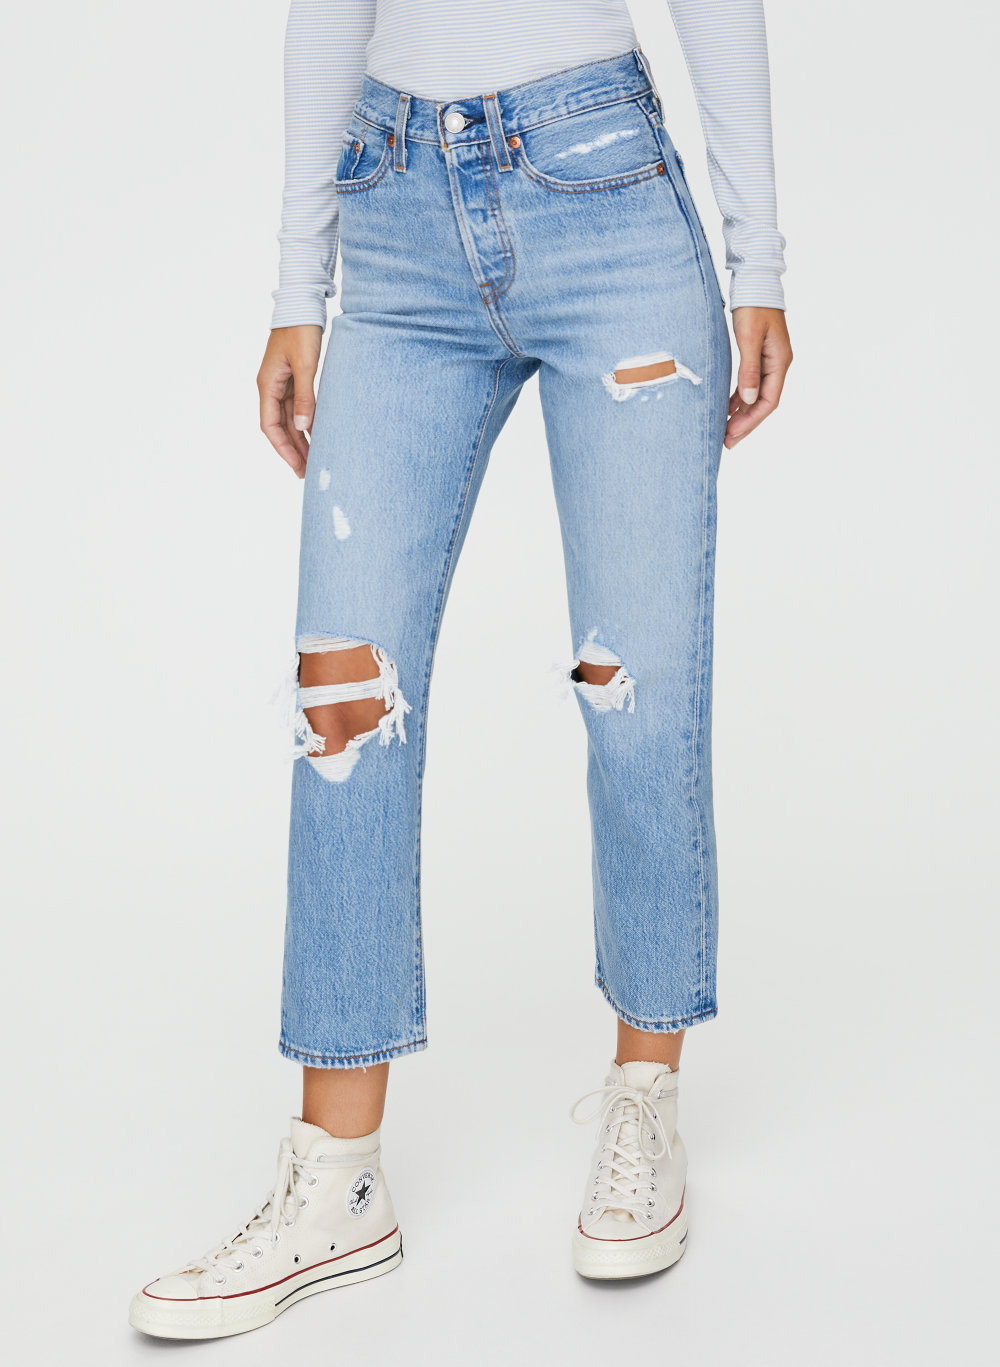 levis wedgie jeans aritzia